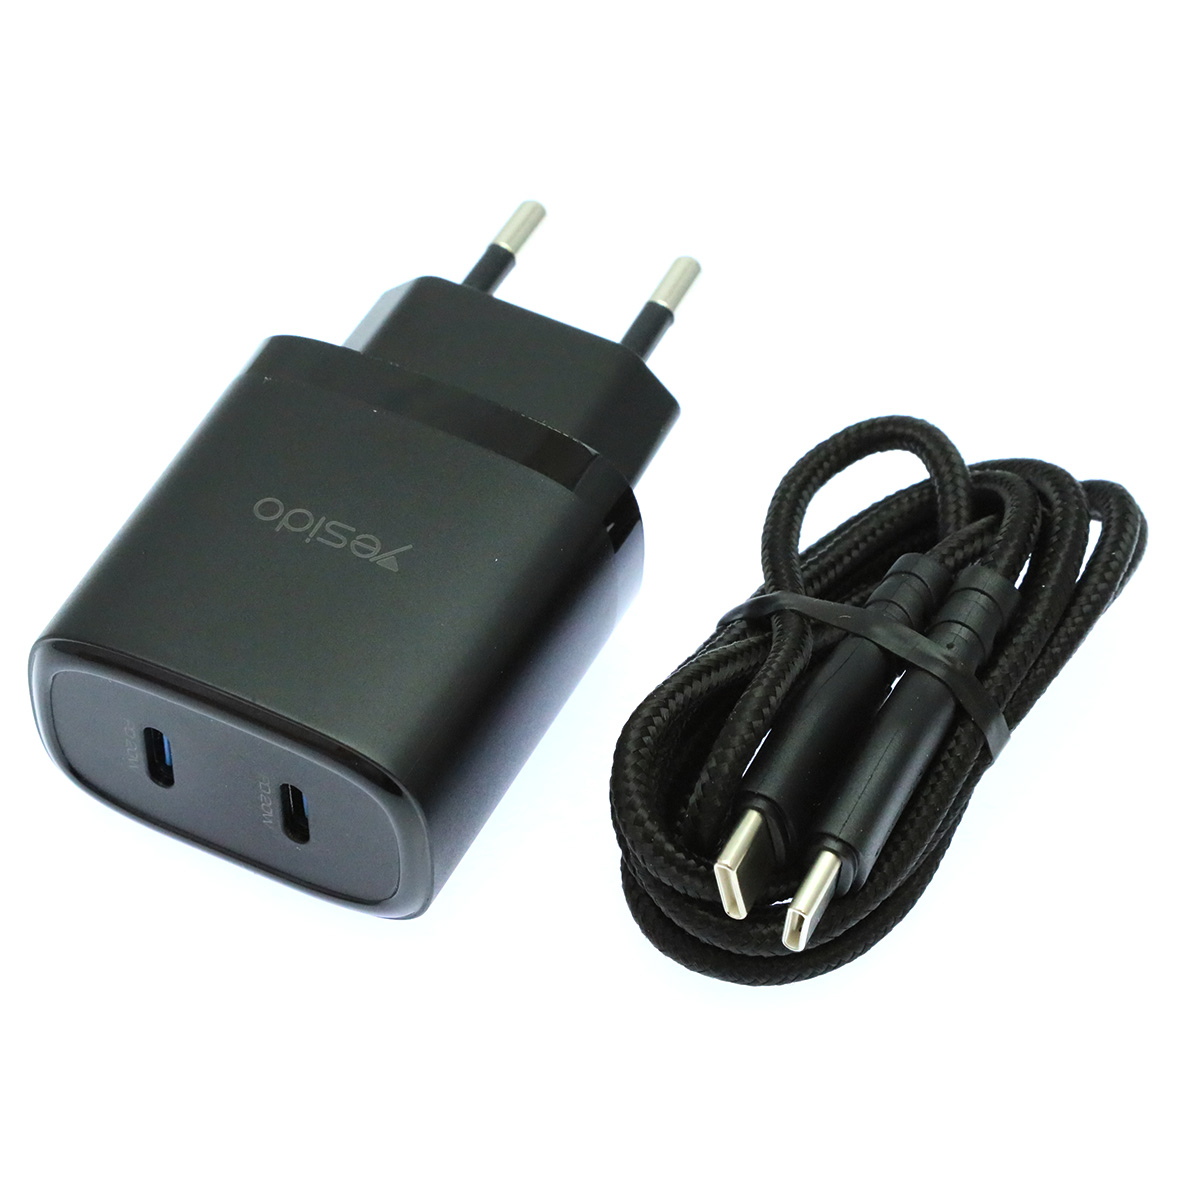 СЗУ (Сетевое зарядное устройство) YESIDO YC56 с кабелем USB Type C на USB Type C, 20W, 2 USB Type C, длина 1 метр, цвет черный